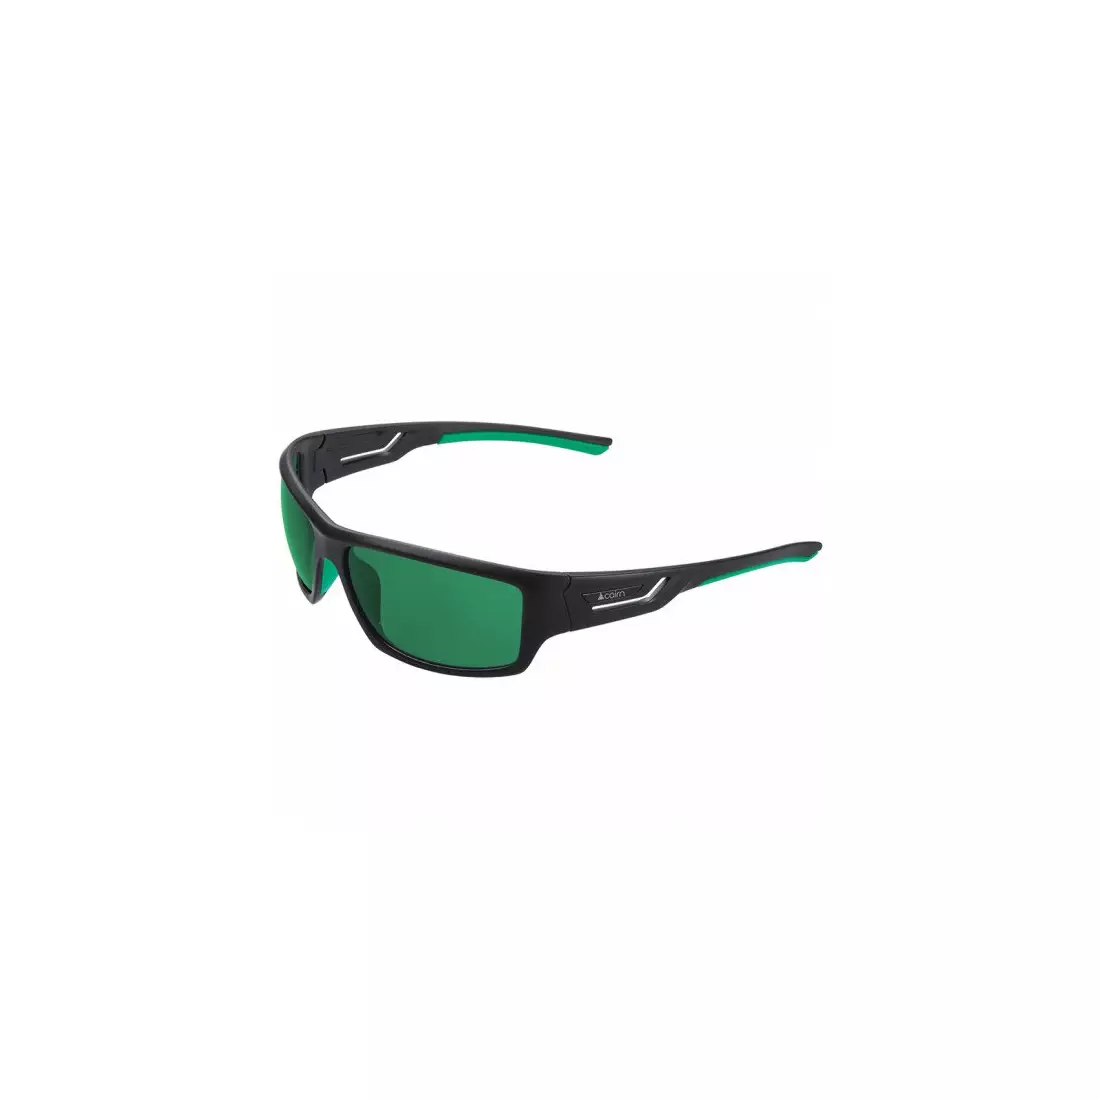 CAIRN sportovní polarizační brýle FLUIDE Polarised black/green SPZFLUIDE190